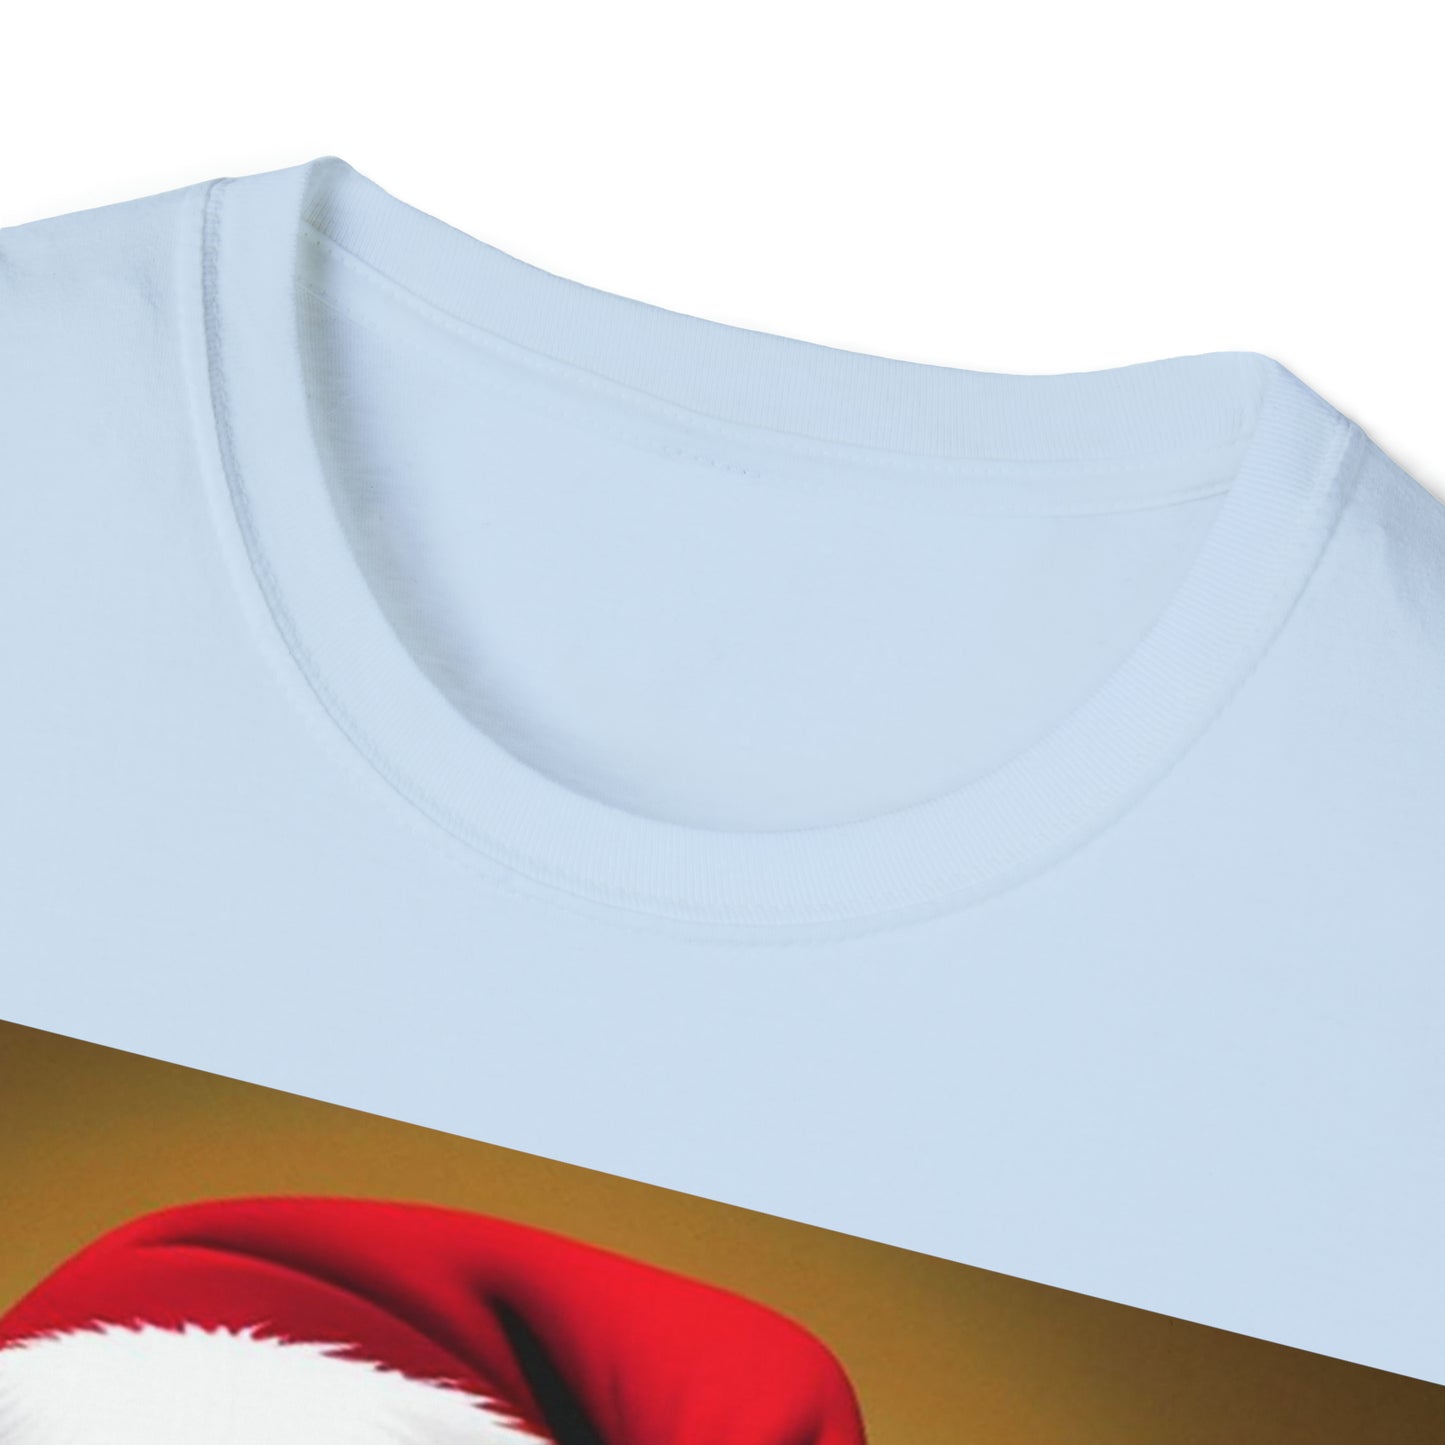 Jolly Santa Unisex T-Shirt